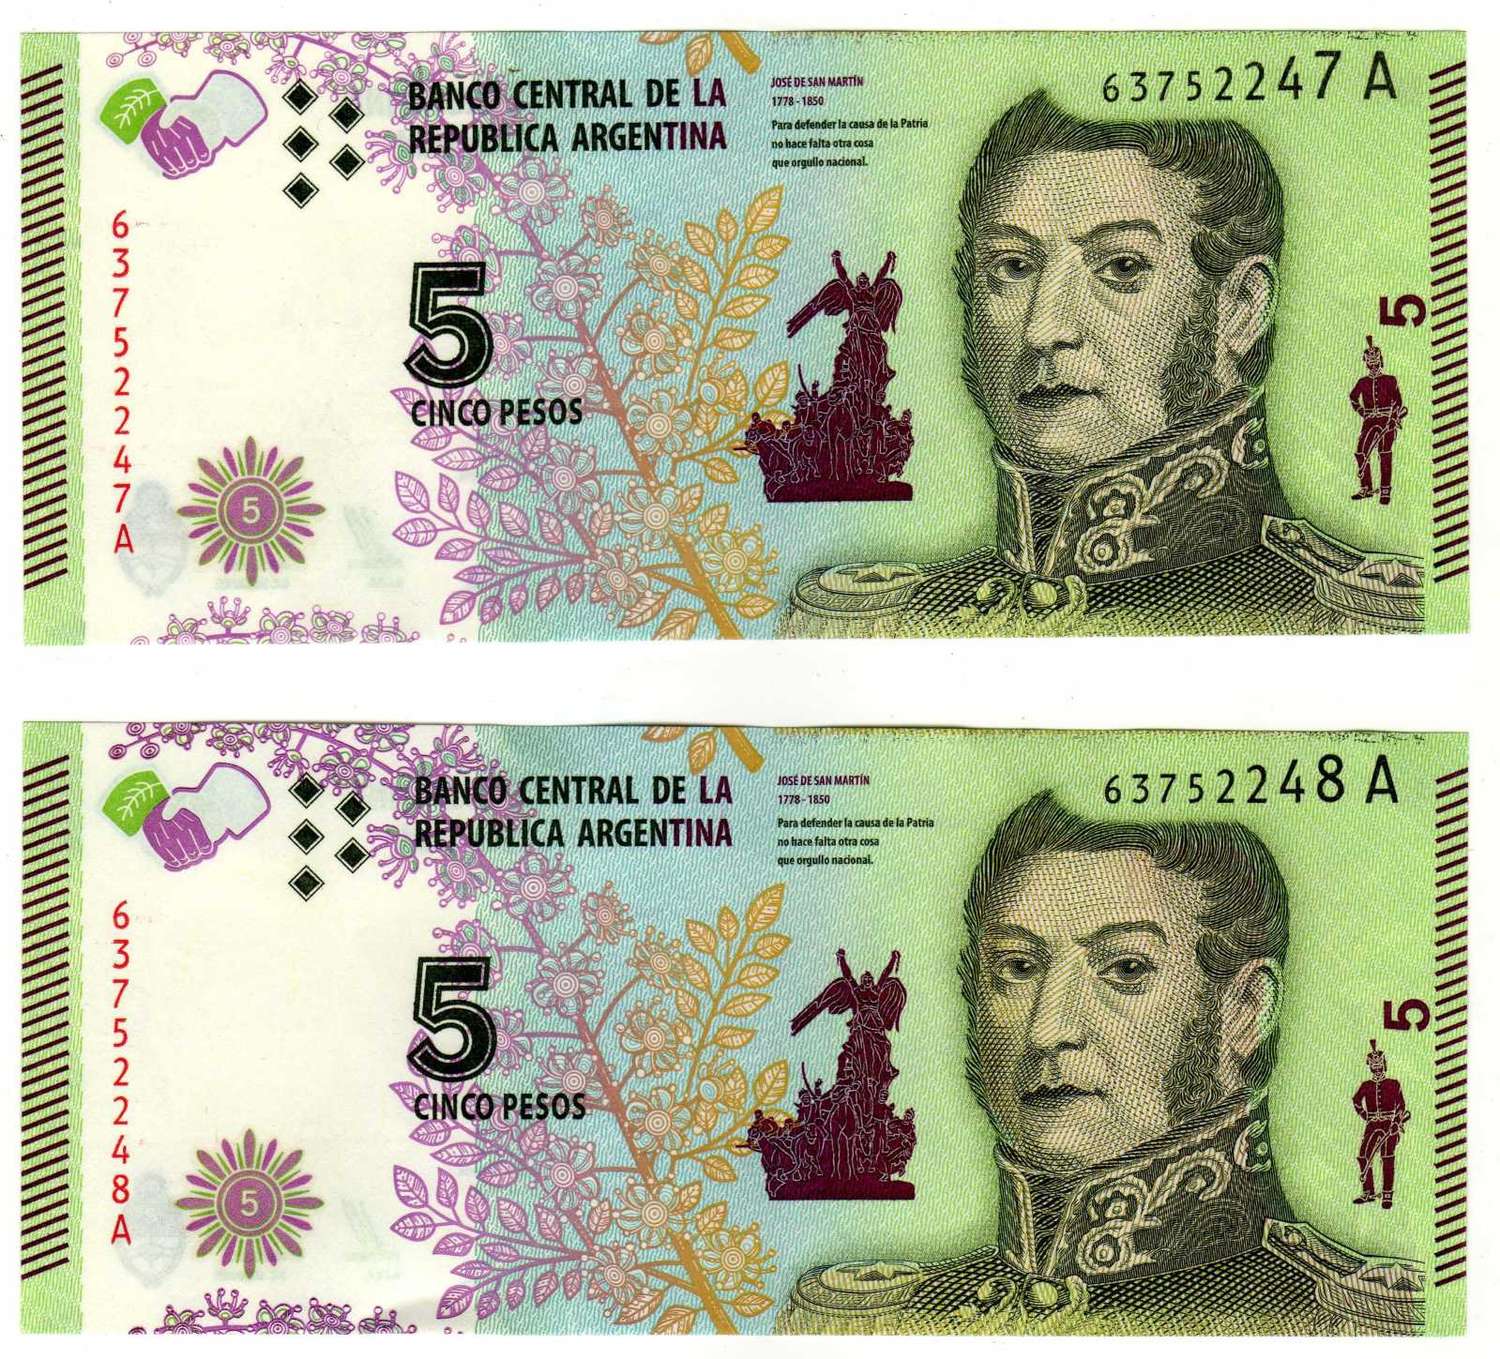 Los billetes de 5 pesos tienen los días contados